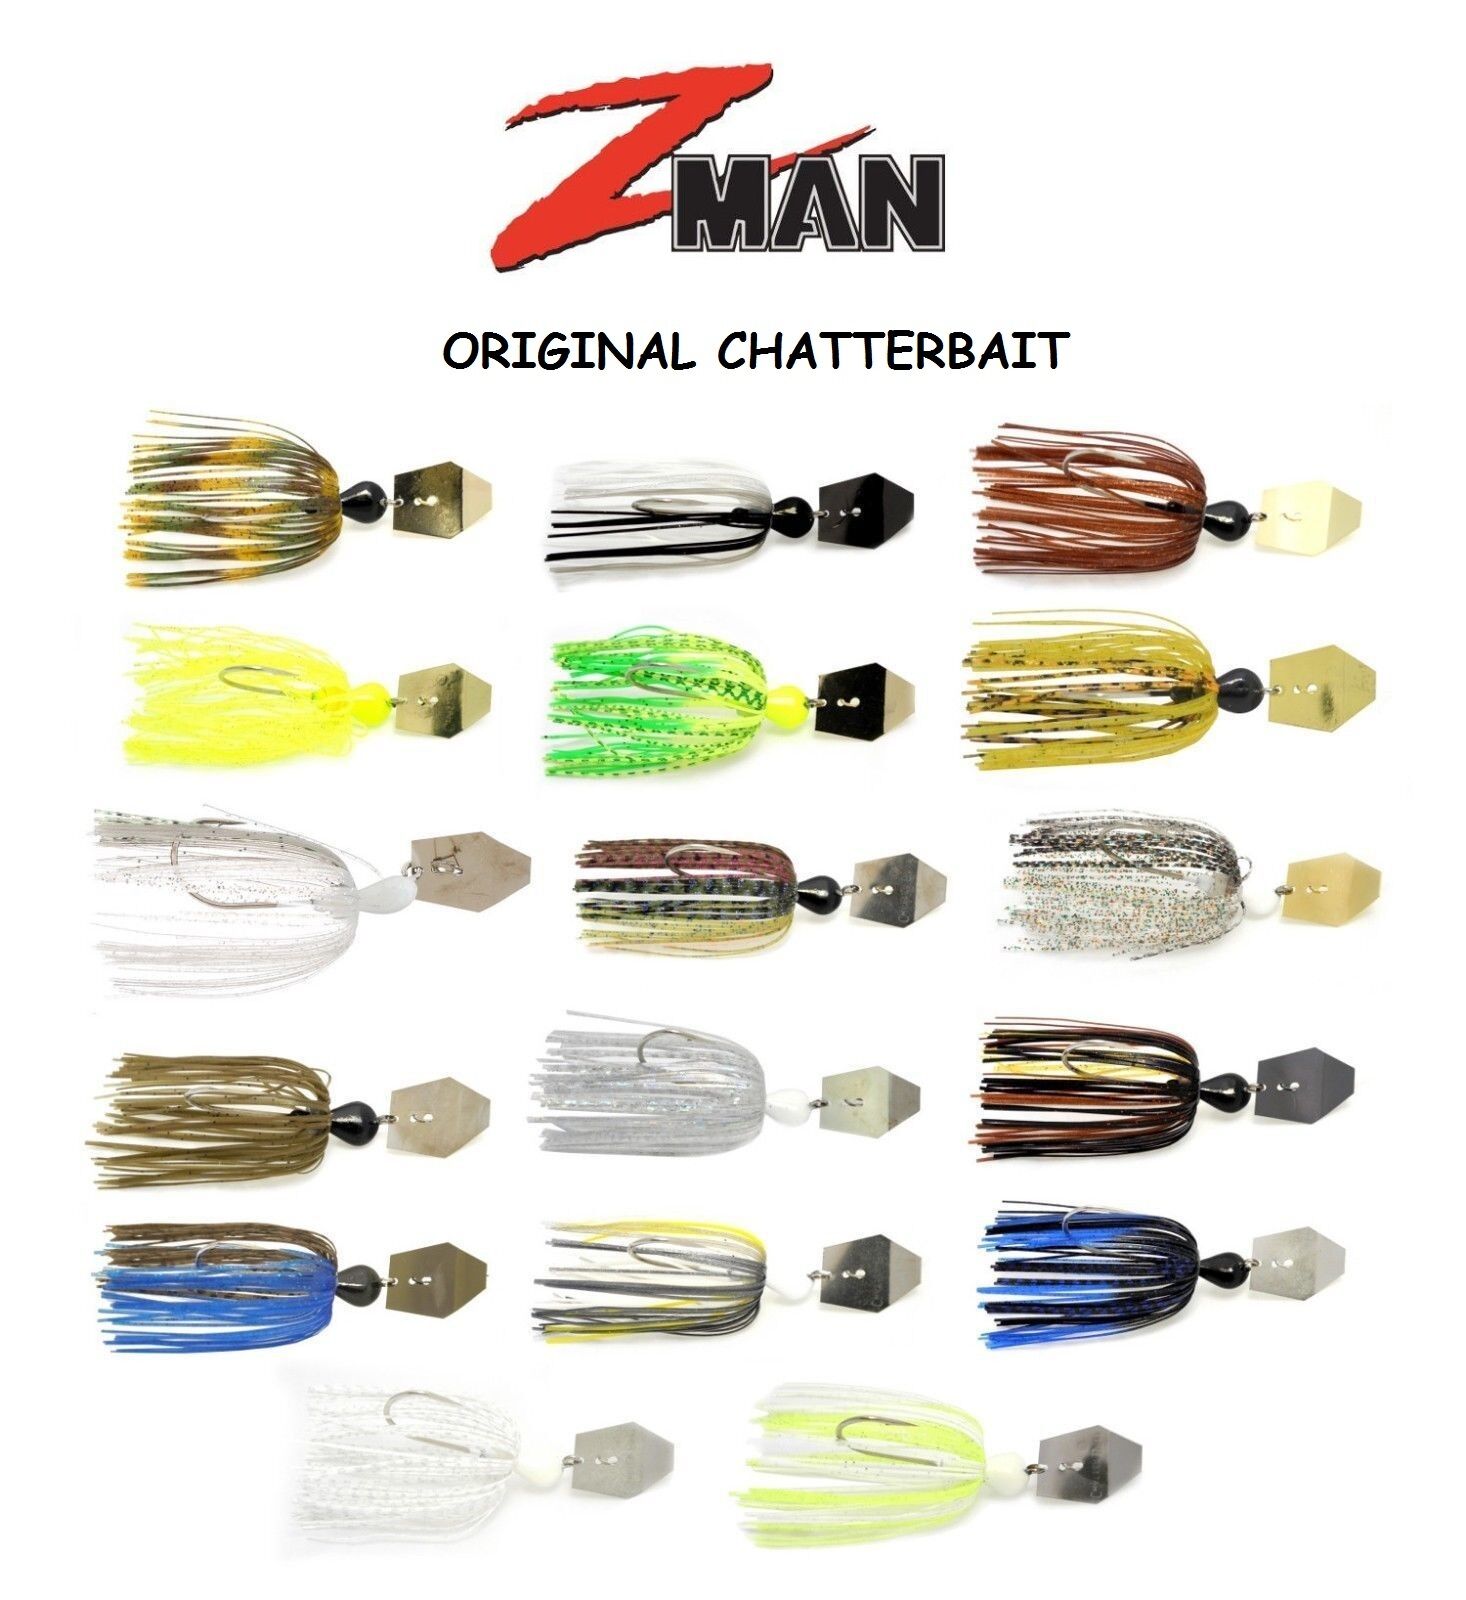 Z-Man Original ChatterBait, 1/2 oz, Choice of Colors